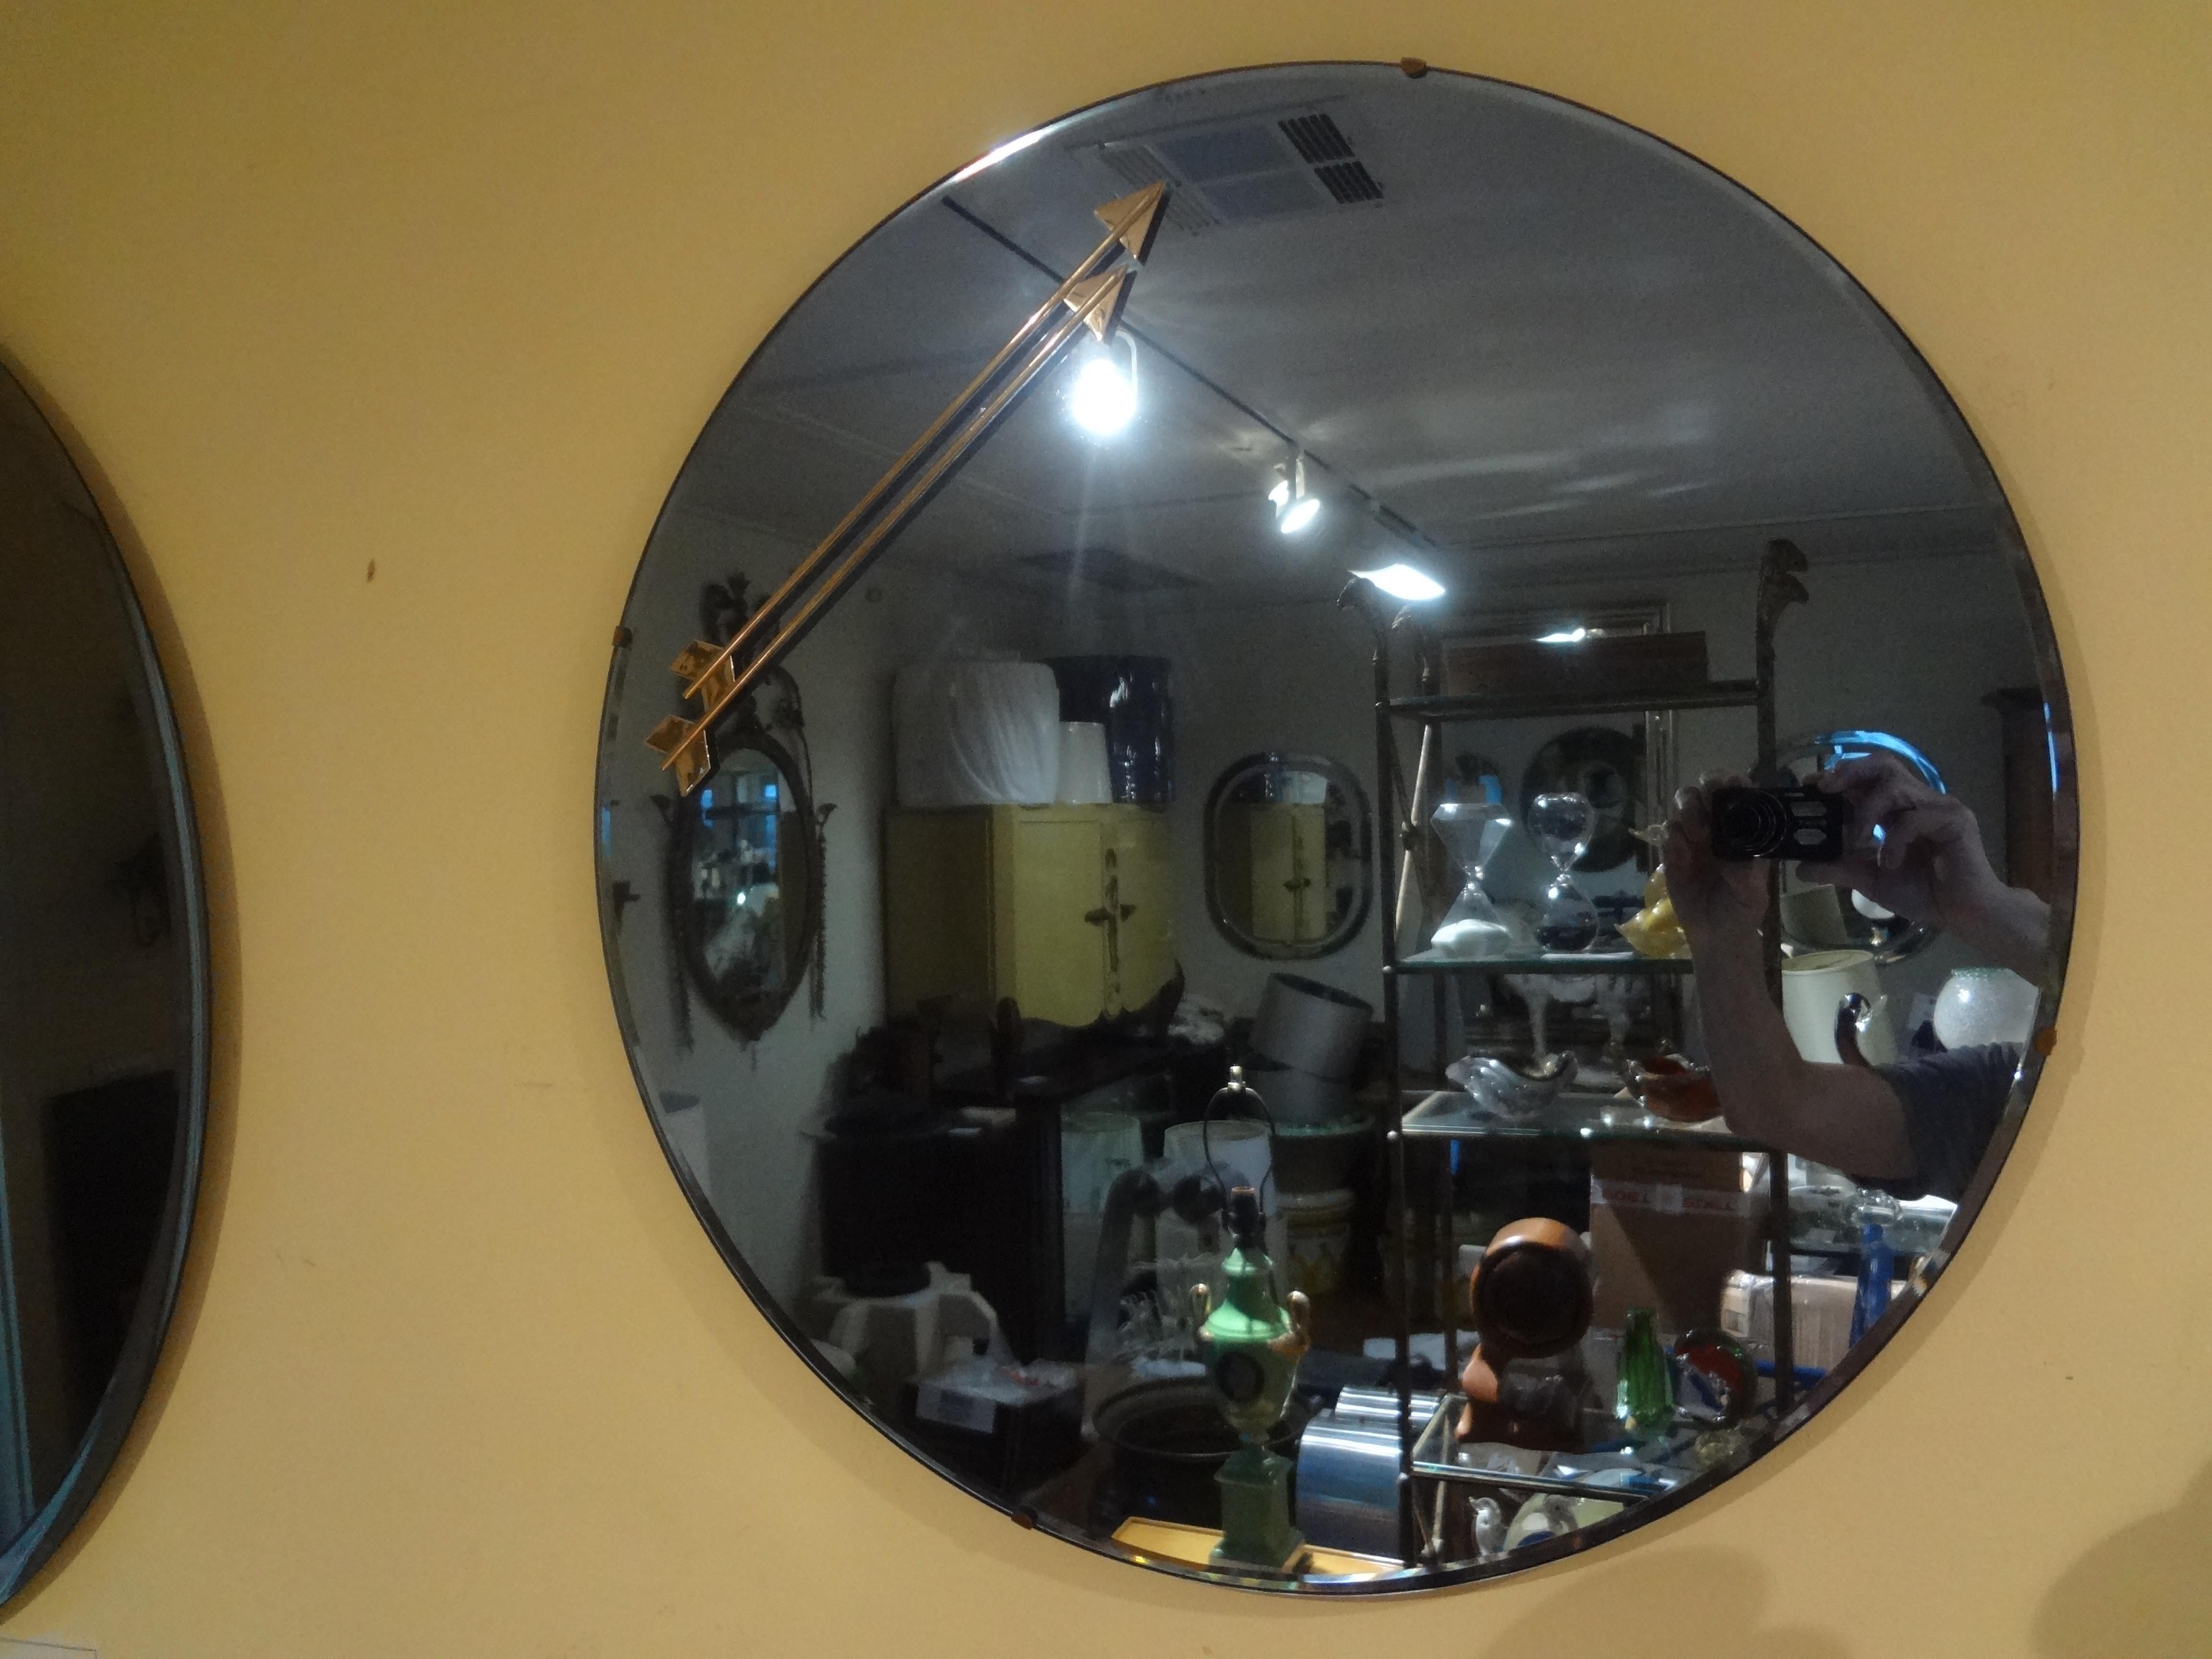 Miroir italien bleu avec accents à double flèche d'après Fontana Arte.
Insolite miroir rond italien bleu avec deux flèches chromées attachées.
Miroir d'appoint parfait pour une salle d'eau ou groupé avec d'autres miroirs.
Spectaculaire !
